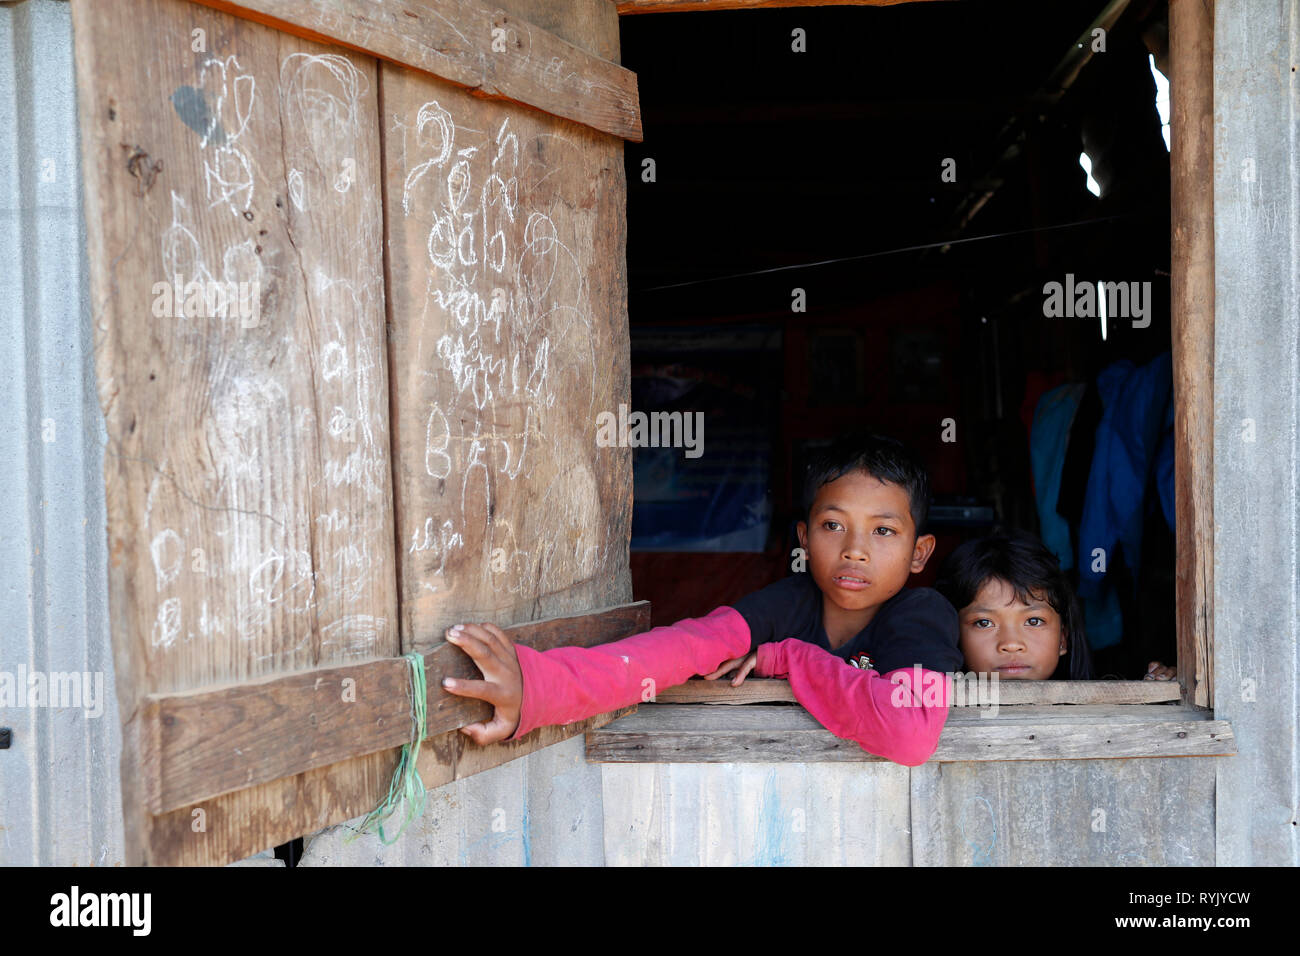 Famille vietnamiennes pauvres vivant dans un petit baraquement se compose de ferraille. Dalat. Le Vietnam. Banque D'Images